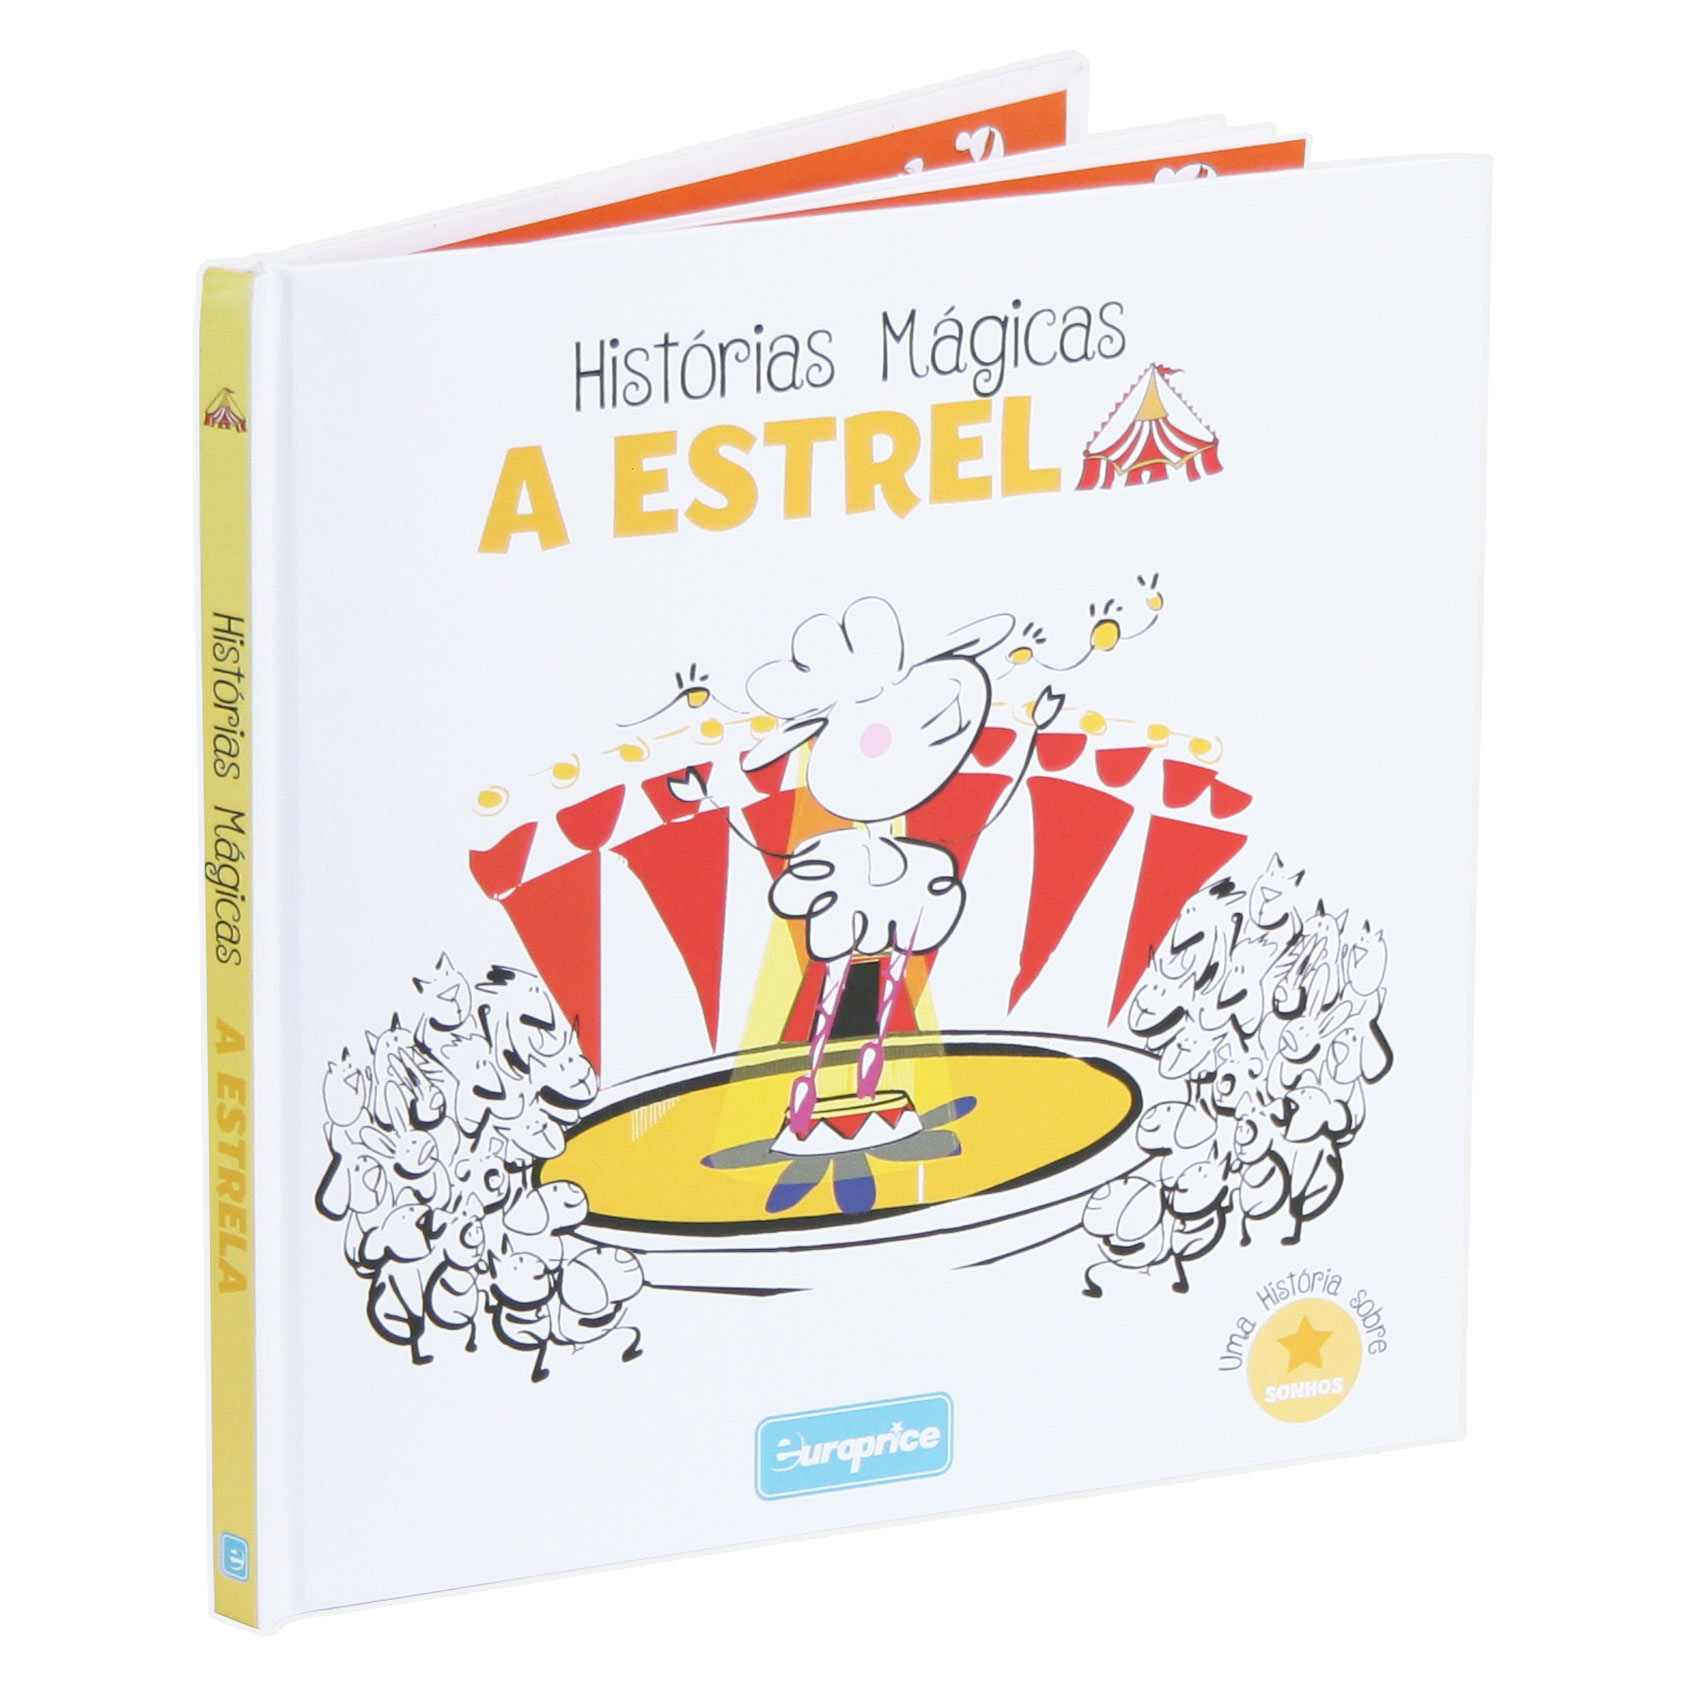 Mostra o livro Histórias Mágicas - A Estrela, com a ovelha Estrela no meio da capa, rodeada de pessoas, num circo.